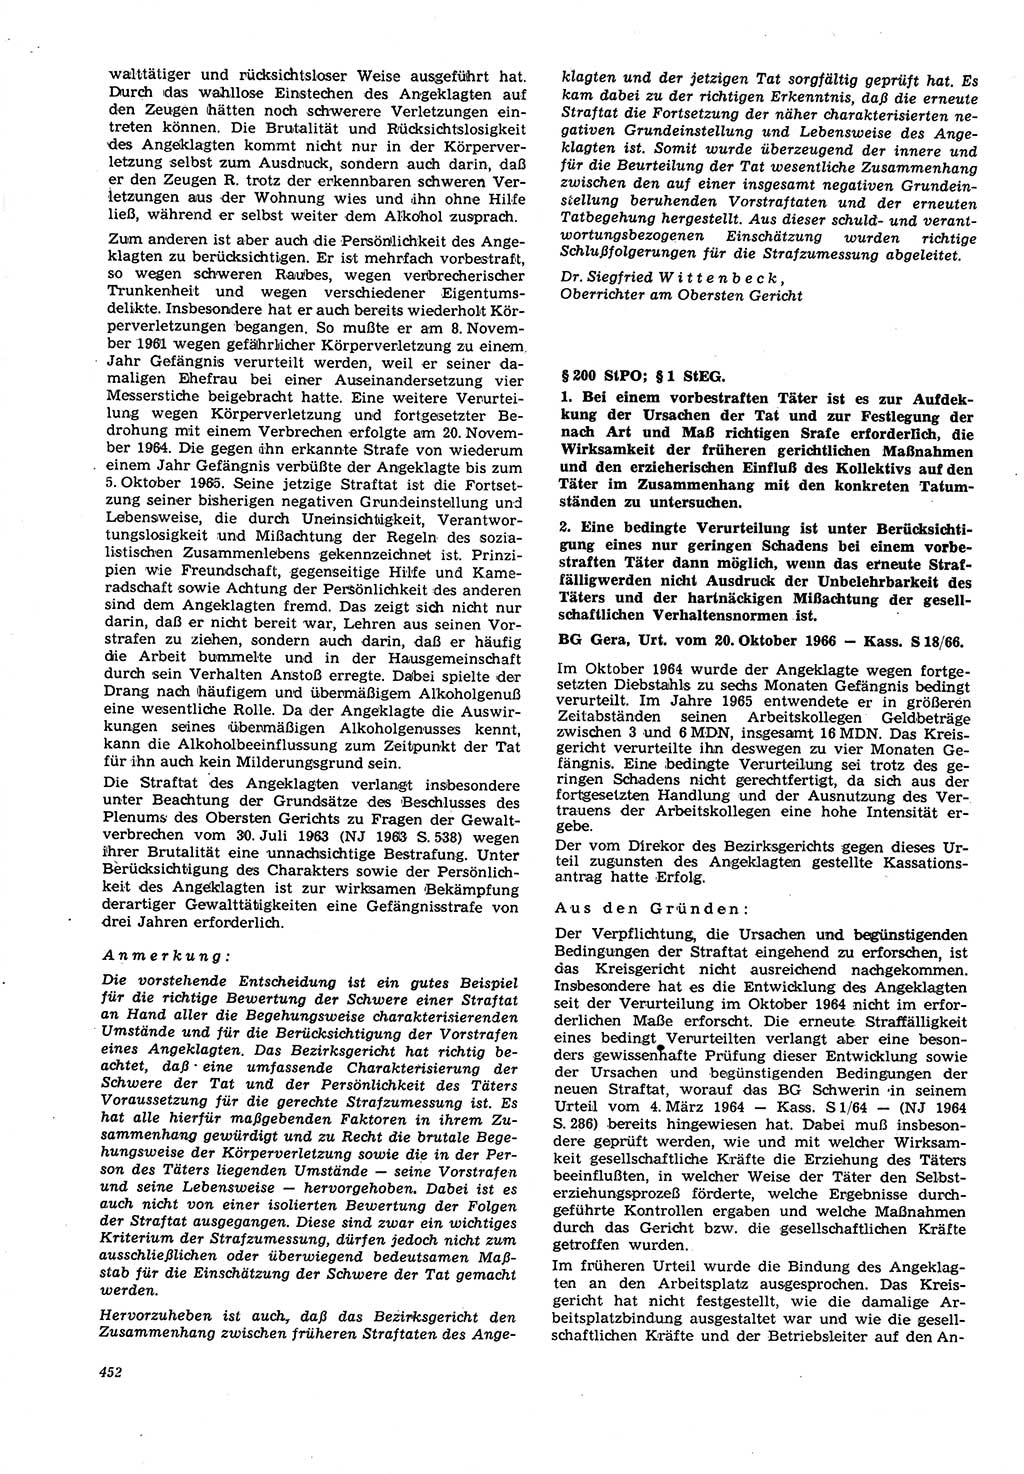 Neue Justiz (NJ), Zeitschrift für Recht und Rechtswissenschaft [Deutsche Demokratische Republik (DDR)], 21. Jahrgang 1967, Seite 452 (NJ DDR 1967, S. 452)